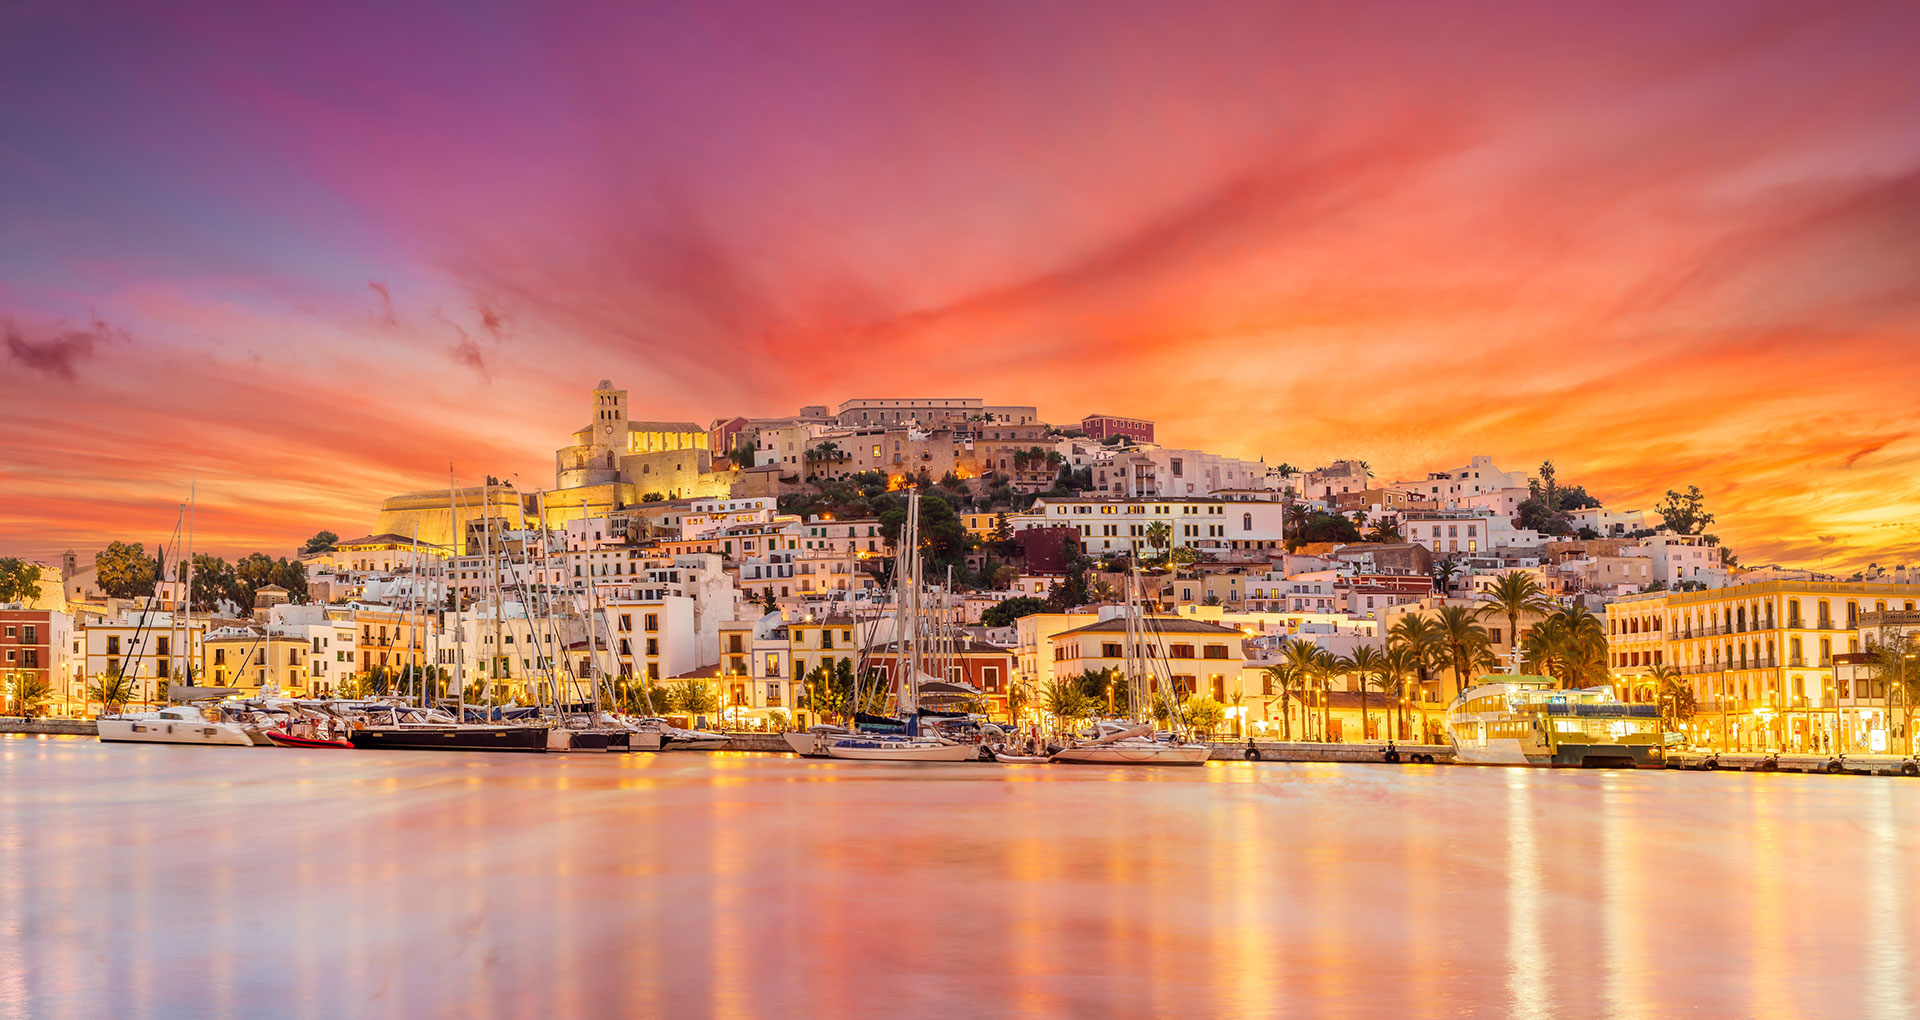 Uitzicht vanaf het water op de winkels in Ibiza, met een schitterende rood/roze lucht